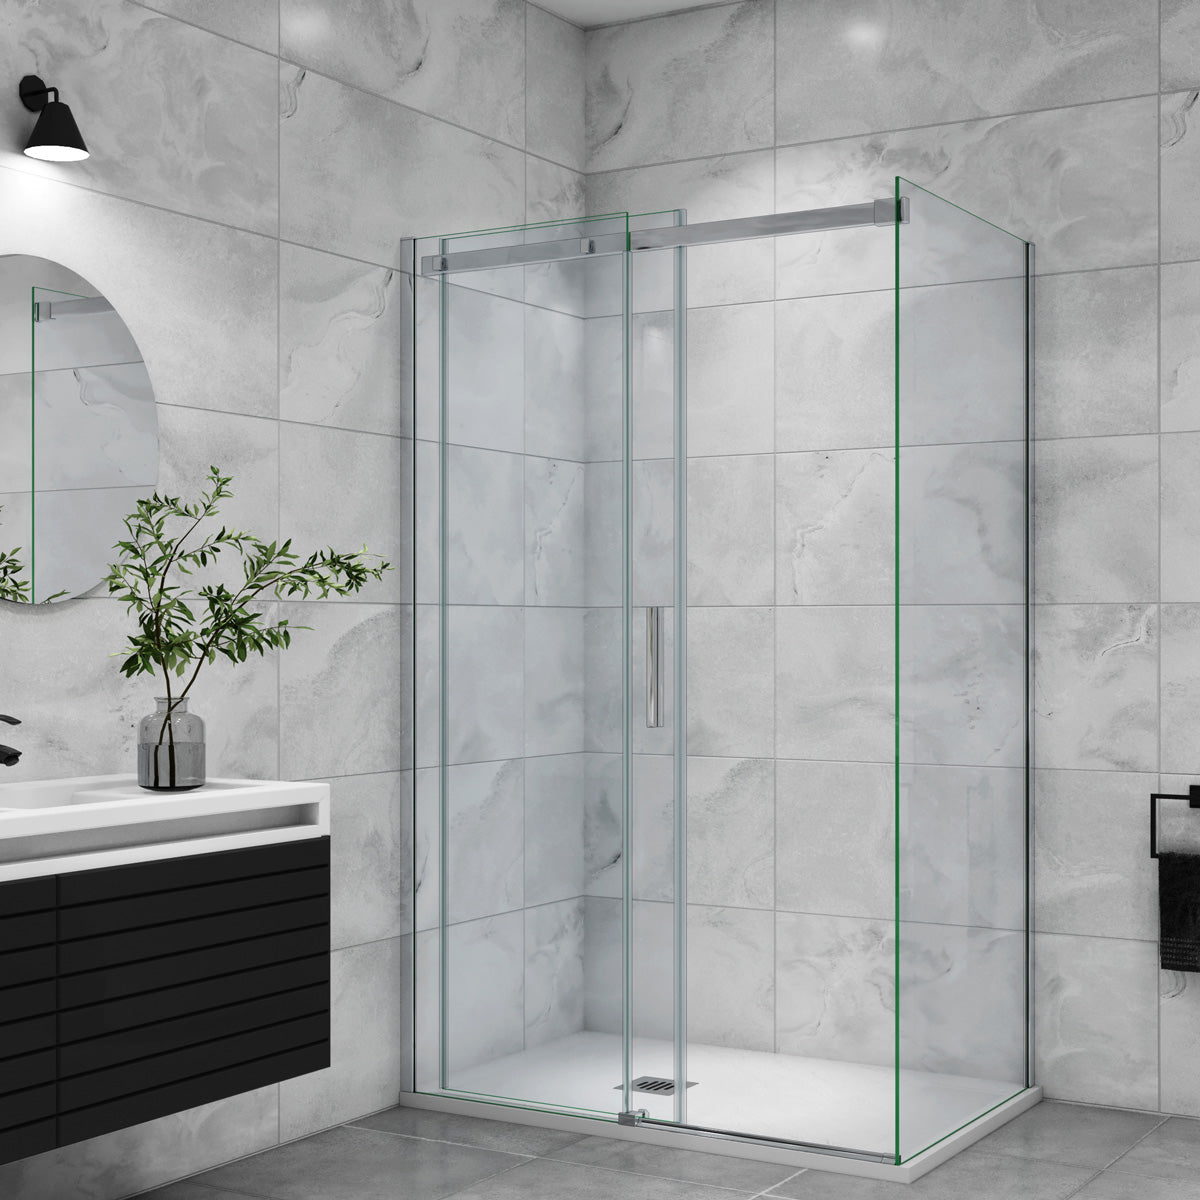 Duschtür+Seitenwand Schiebetür 100x90 cm Glasstärke 6mm Dusche Duschabtrennung Duschkabine